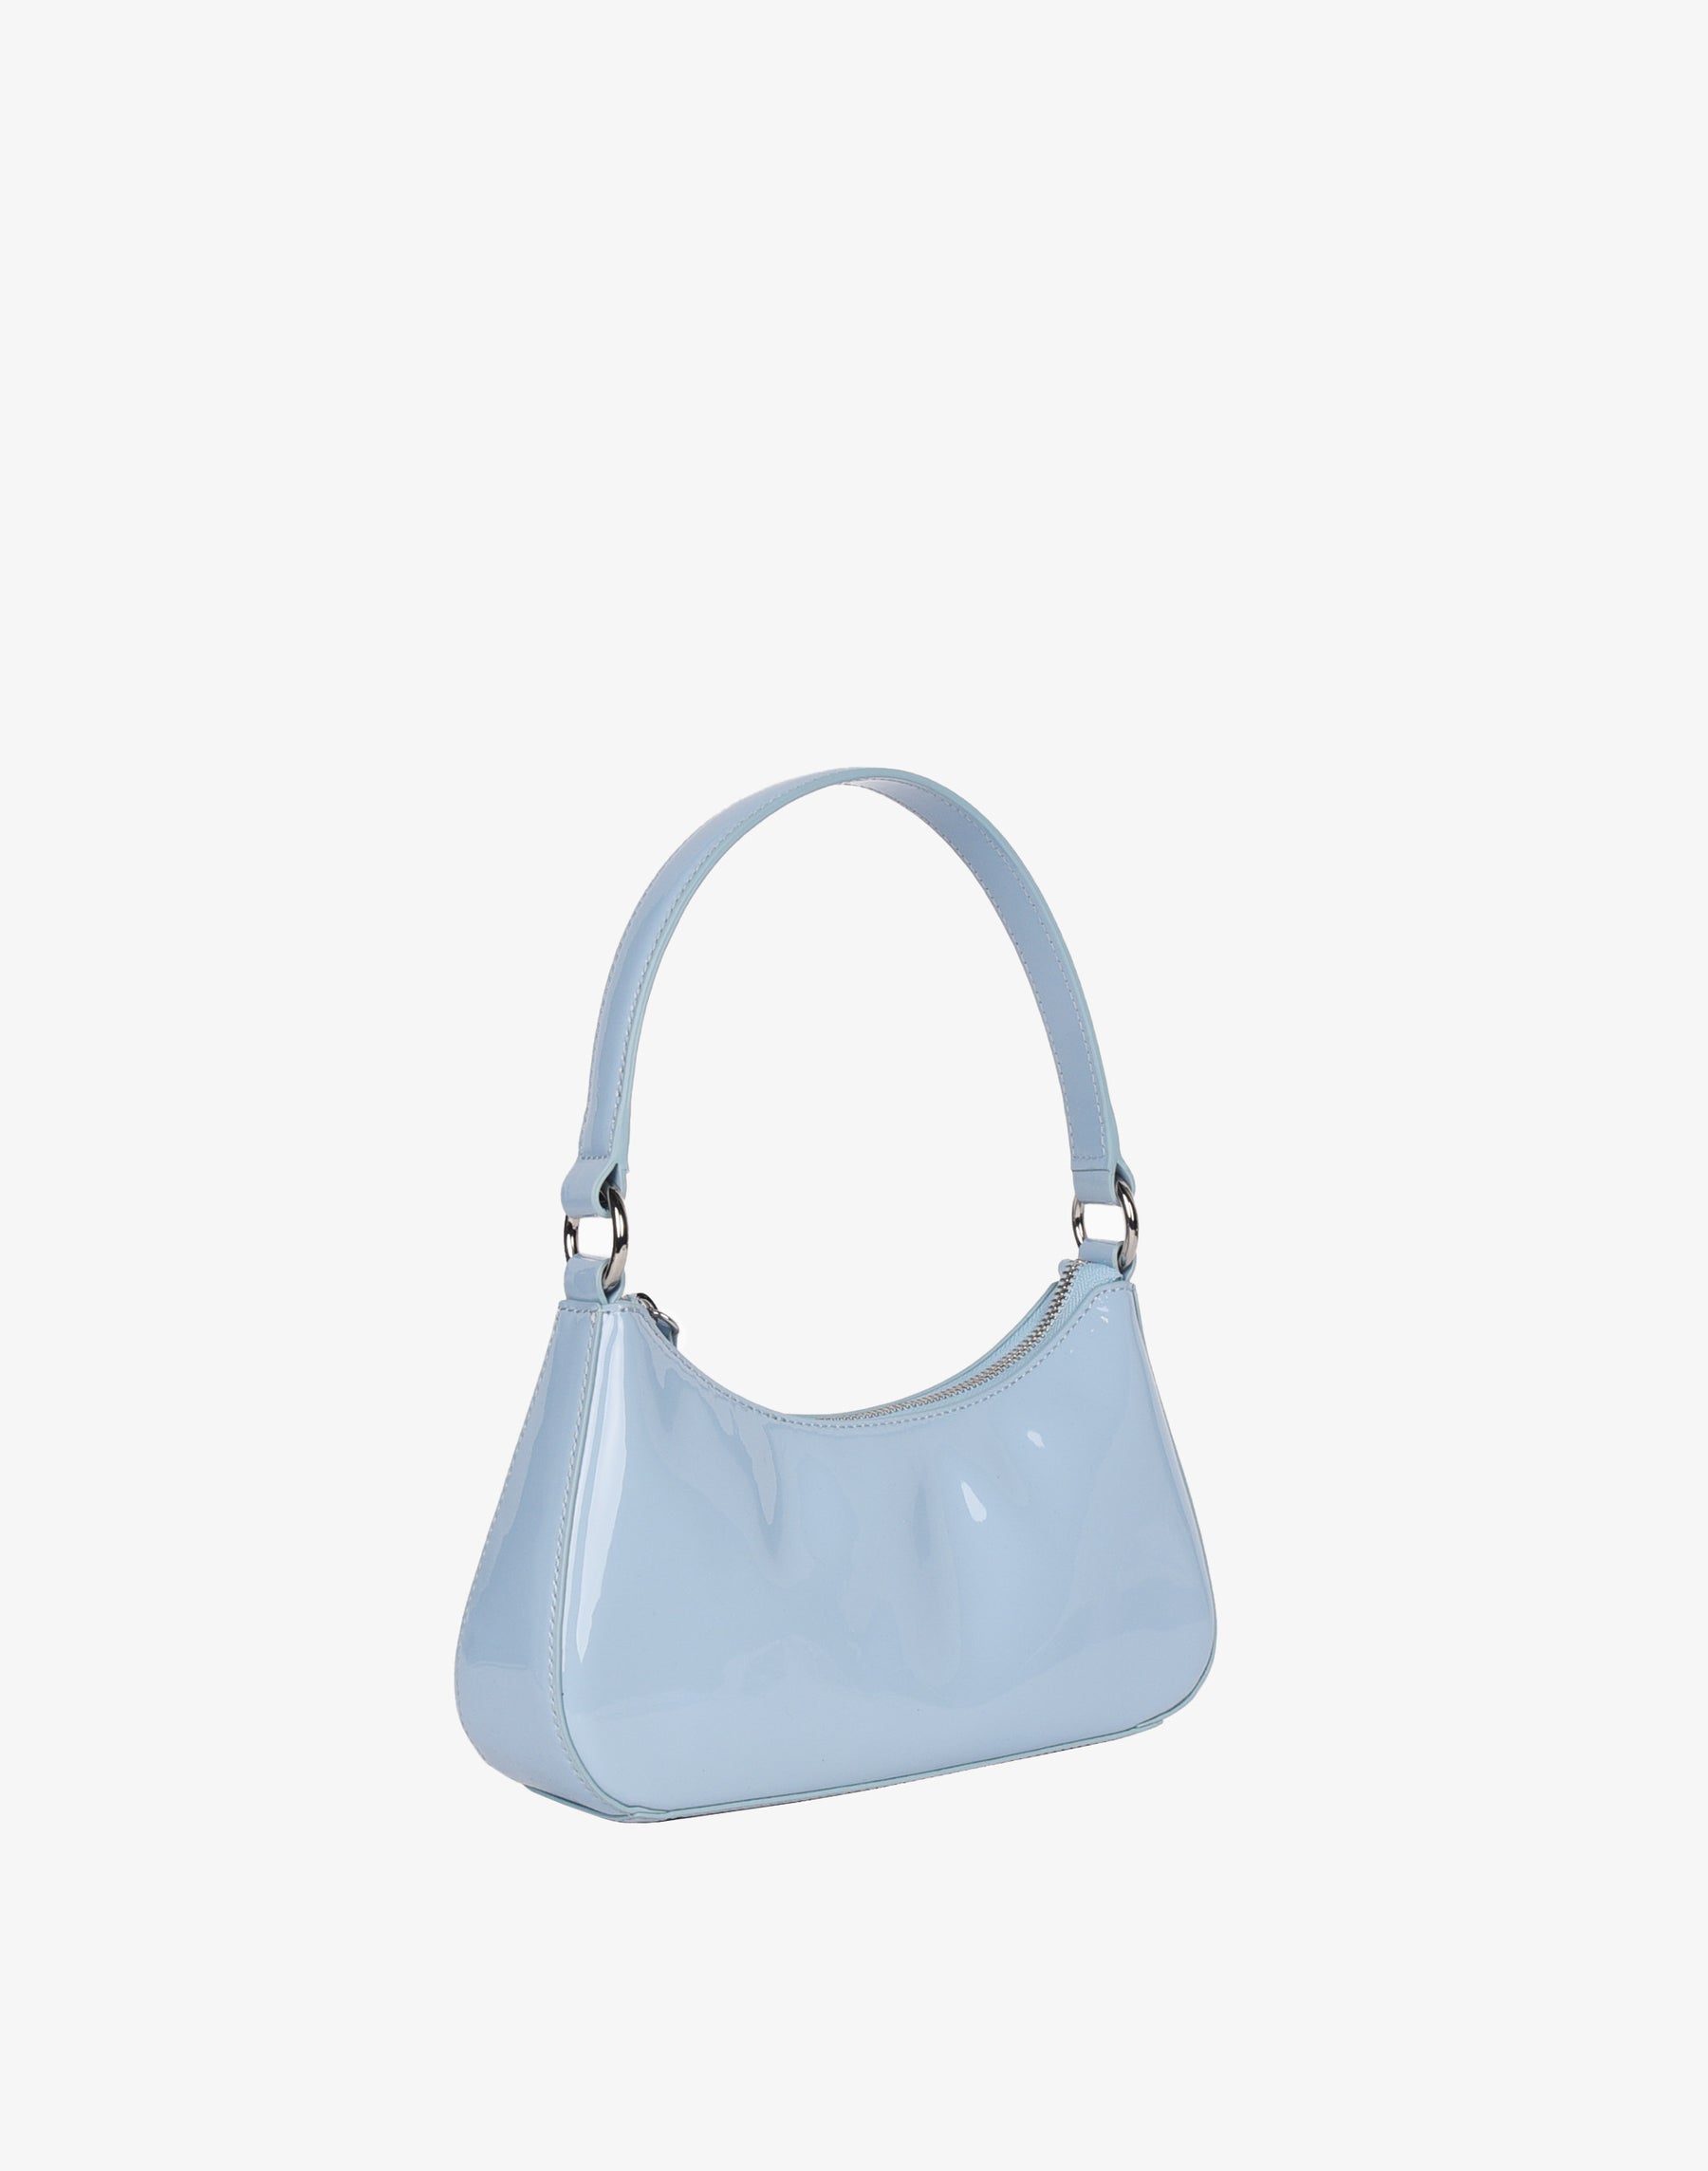 Luxe Mini Shoulder Bag - Sky Blue Patent